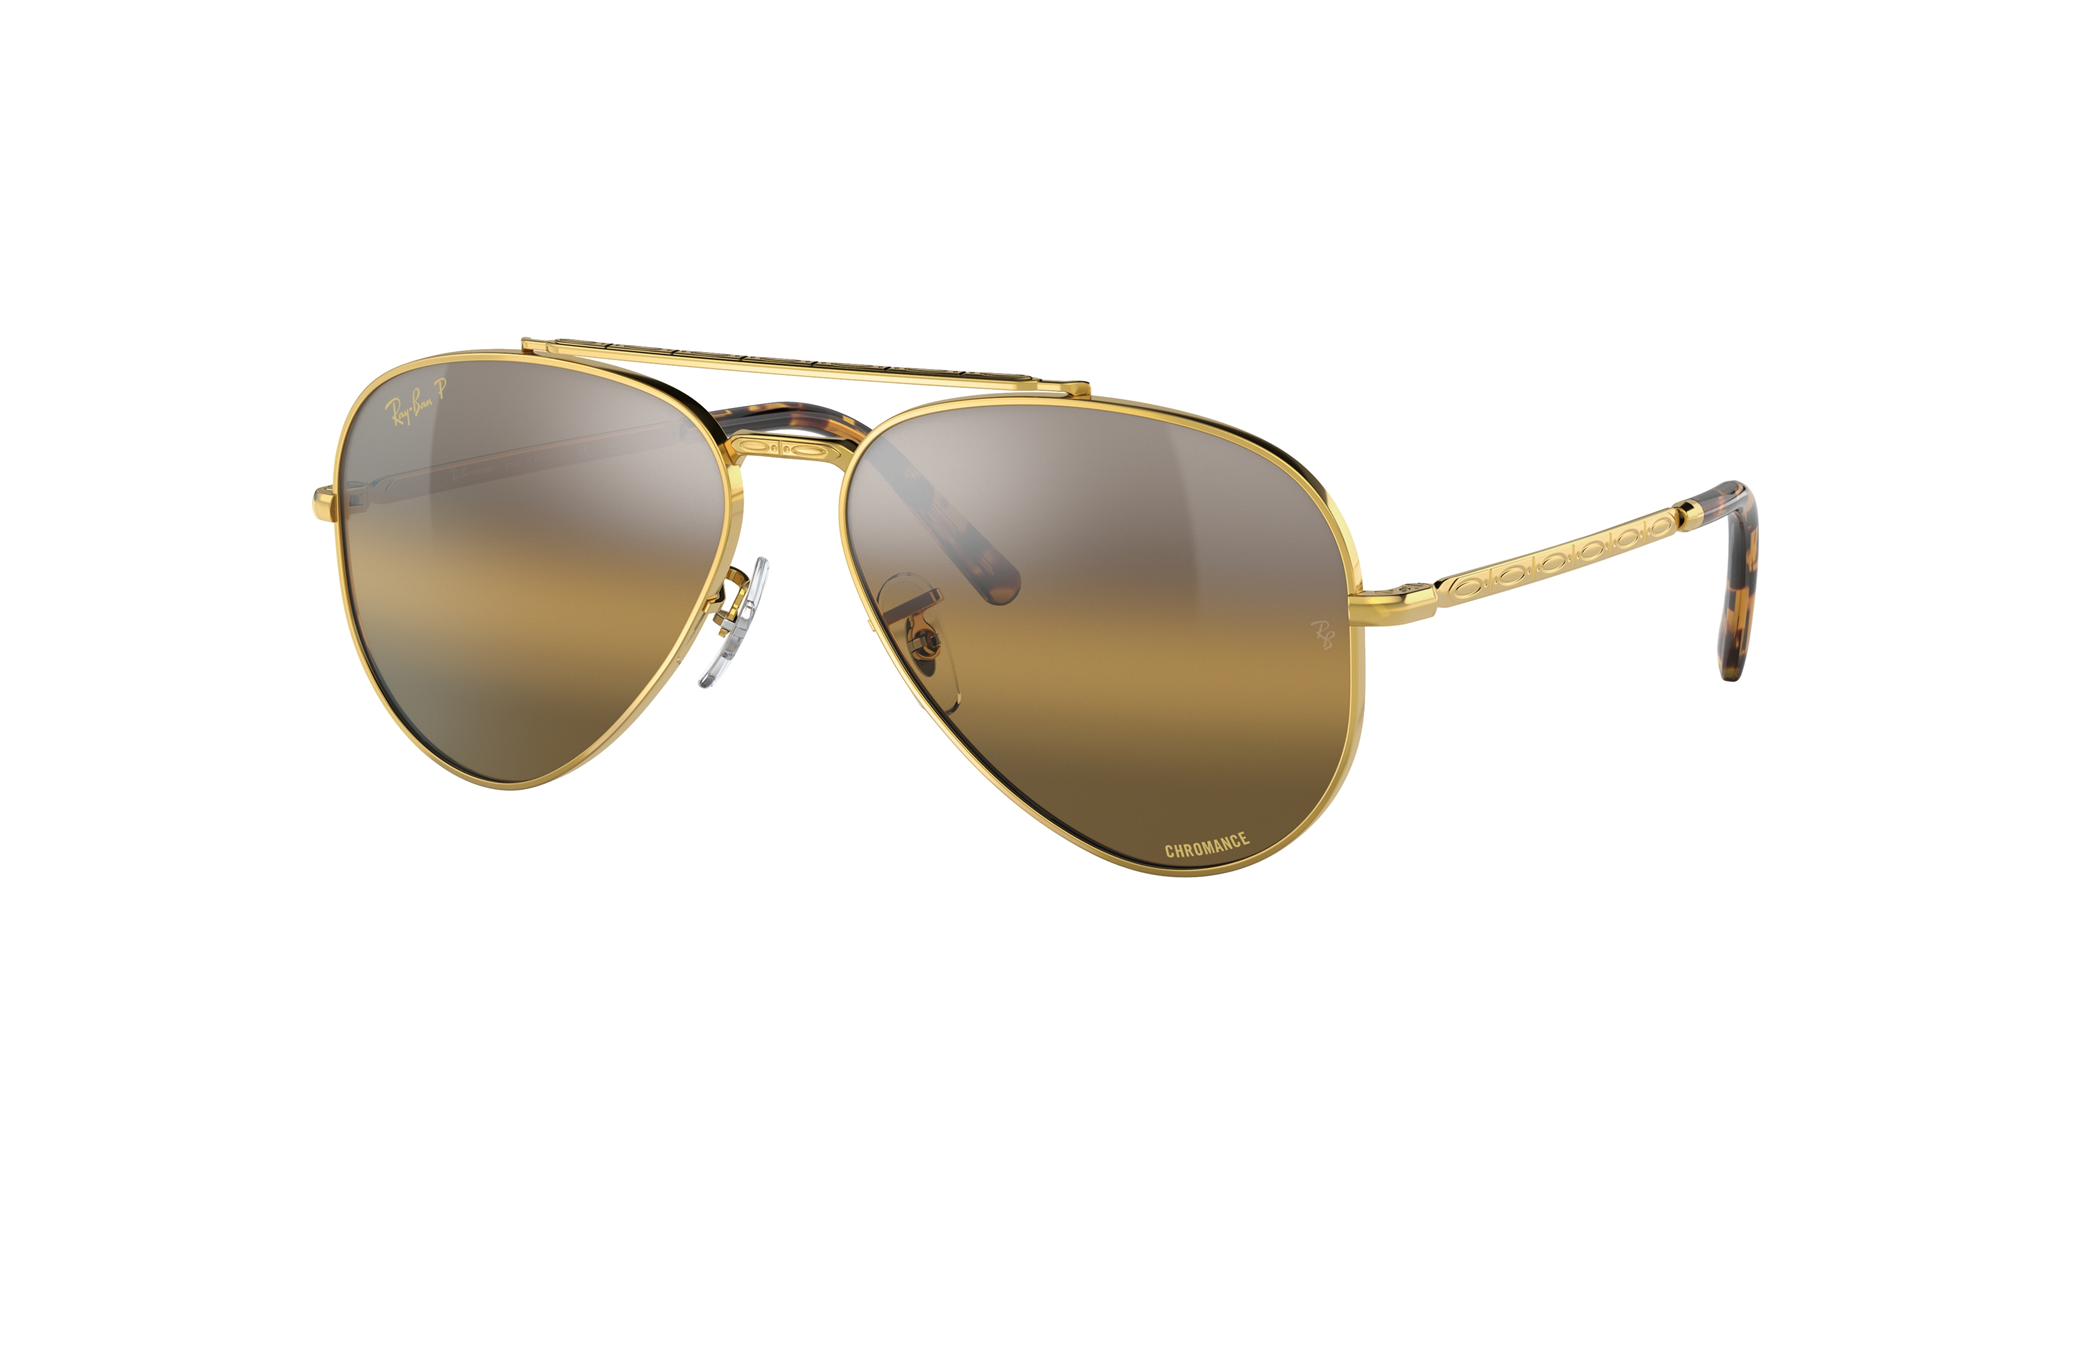 Vintage B&L Ray Ban Golden Frame Aviator Sunglasses Green Lens | eBay